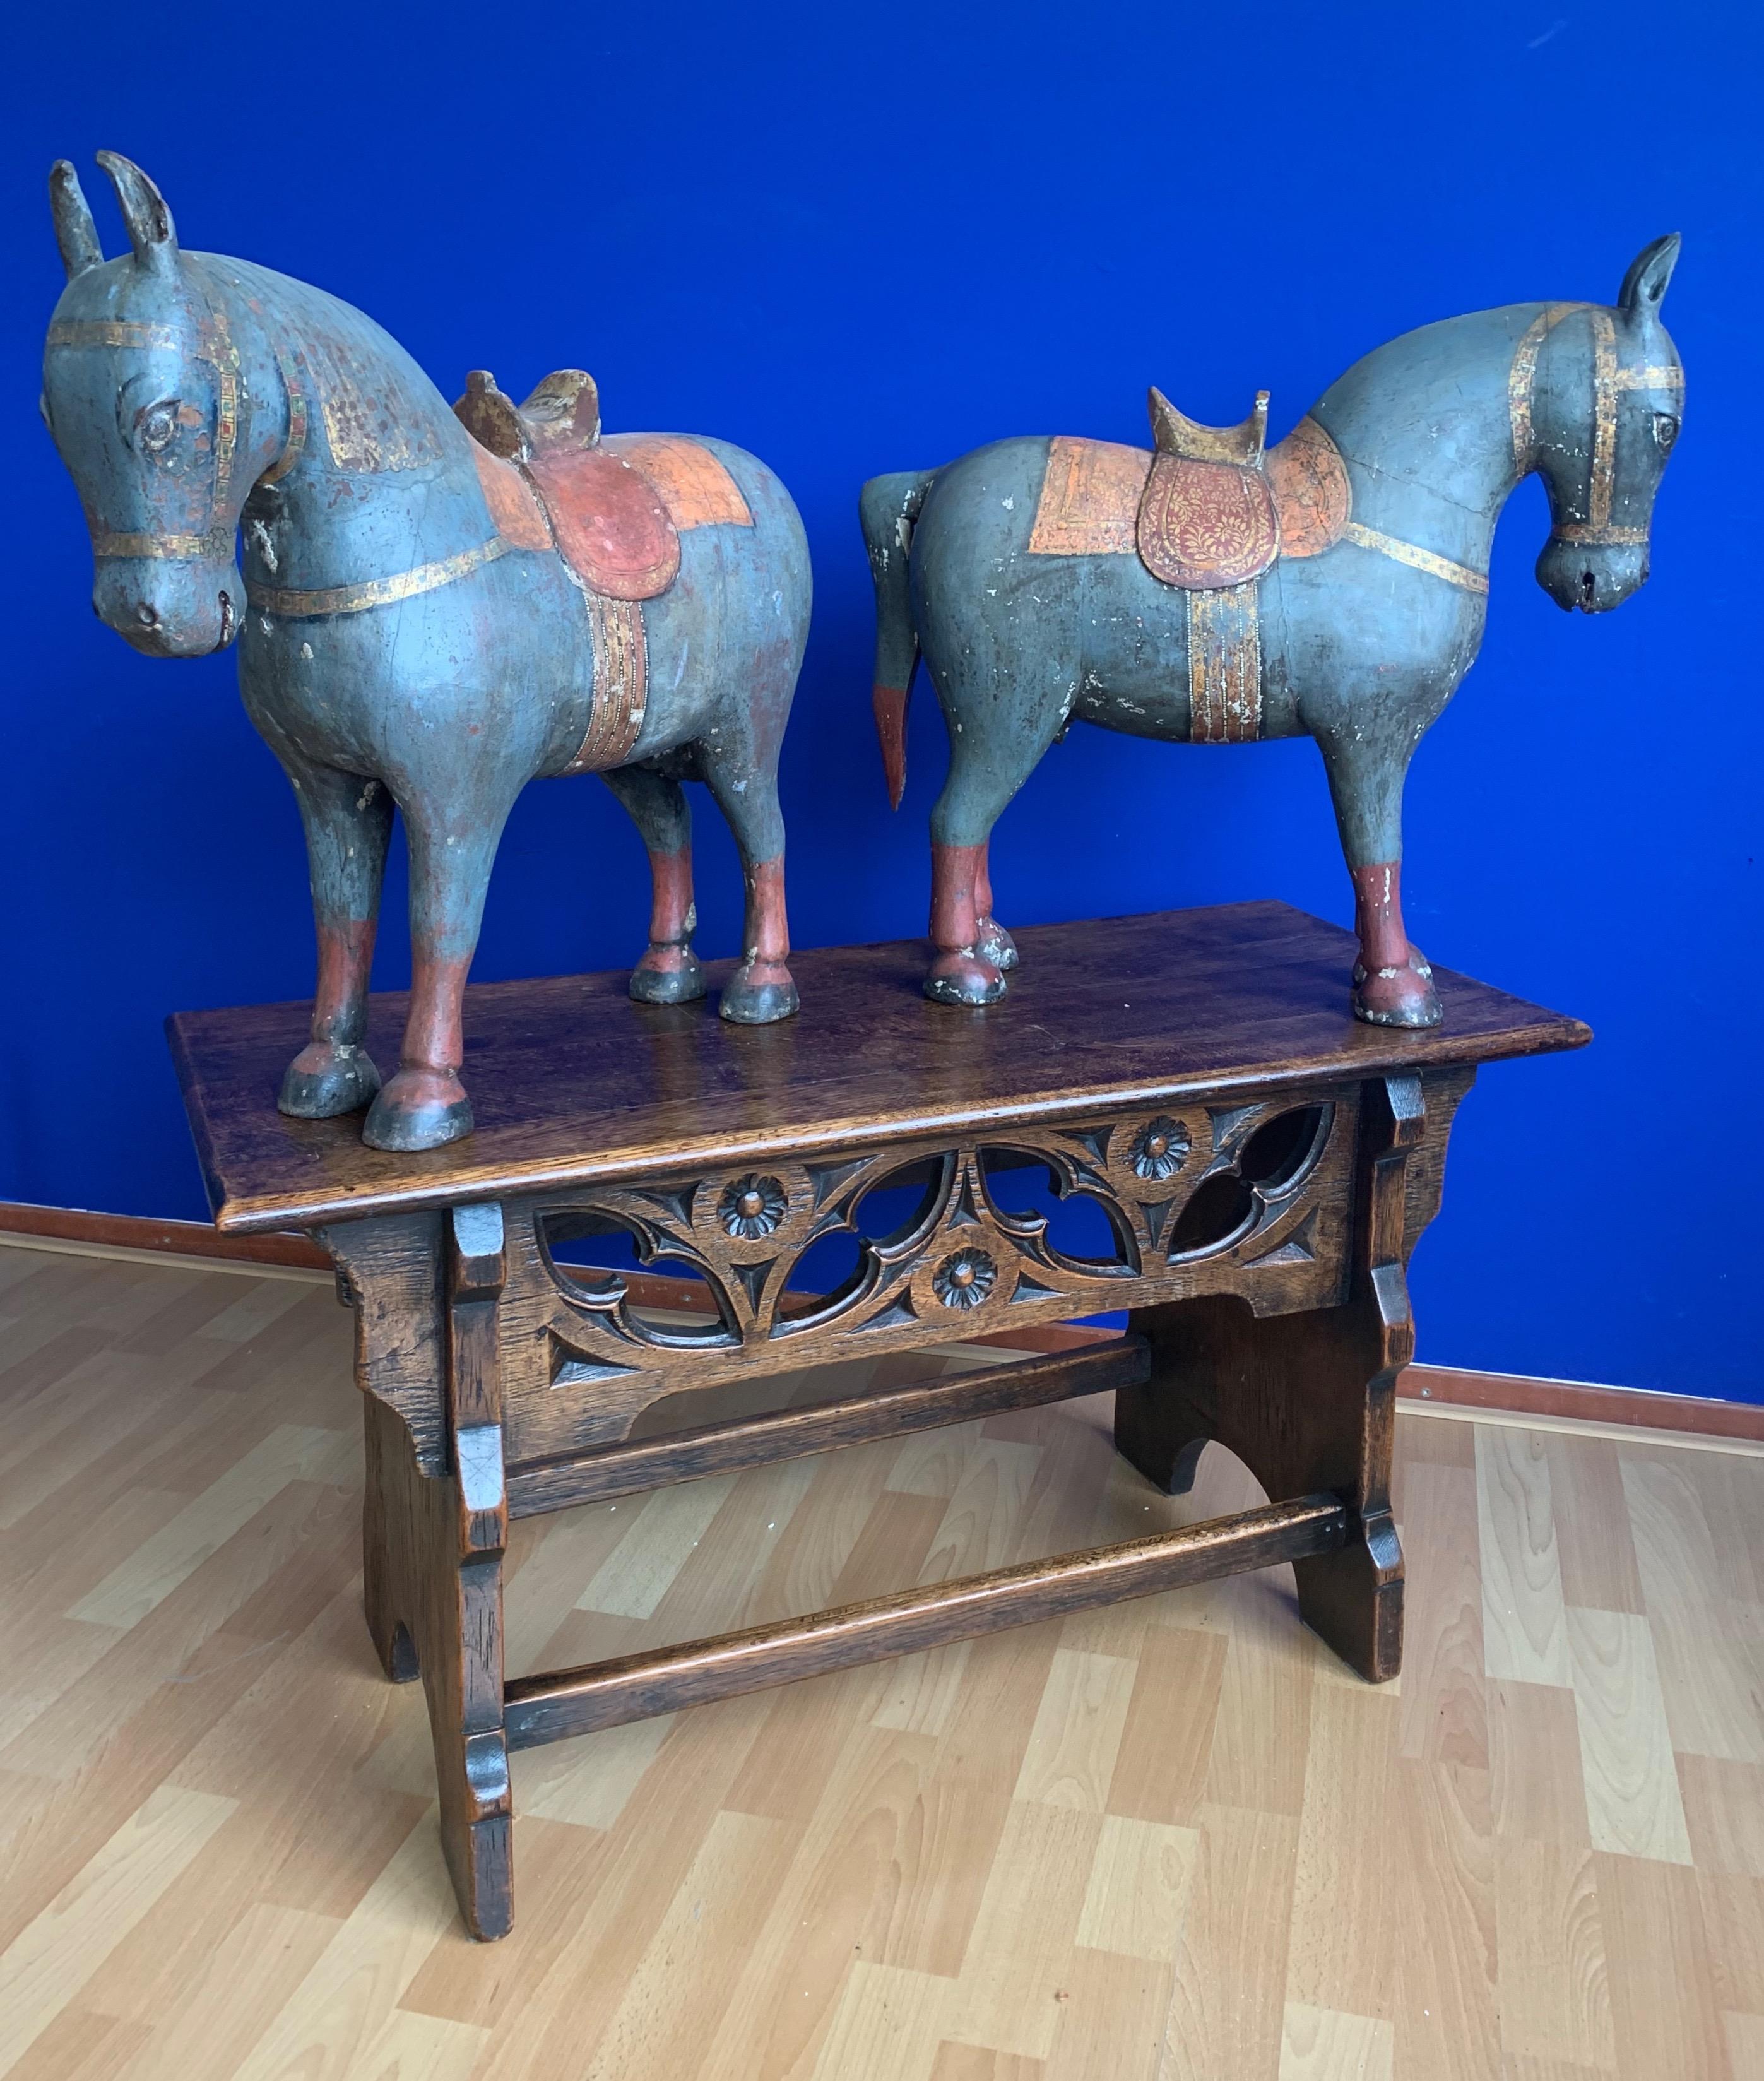 Wunderschönes und einzigartiges Paar passender Pferdeskulpturen.

Mit unserer gemeinsamen Erfahrung von fast 30 Jahren im Antiquitätenhandel waren wir begeistert, wieder einmal wunderschöne handgefertigte und dekorative Antiquitäten zu finden, die